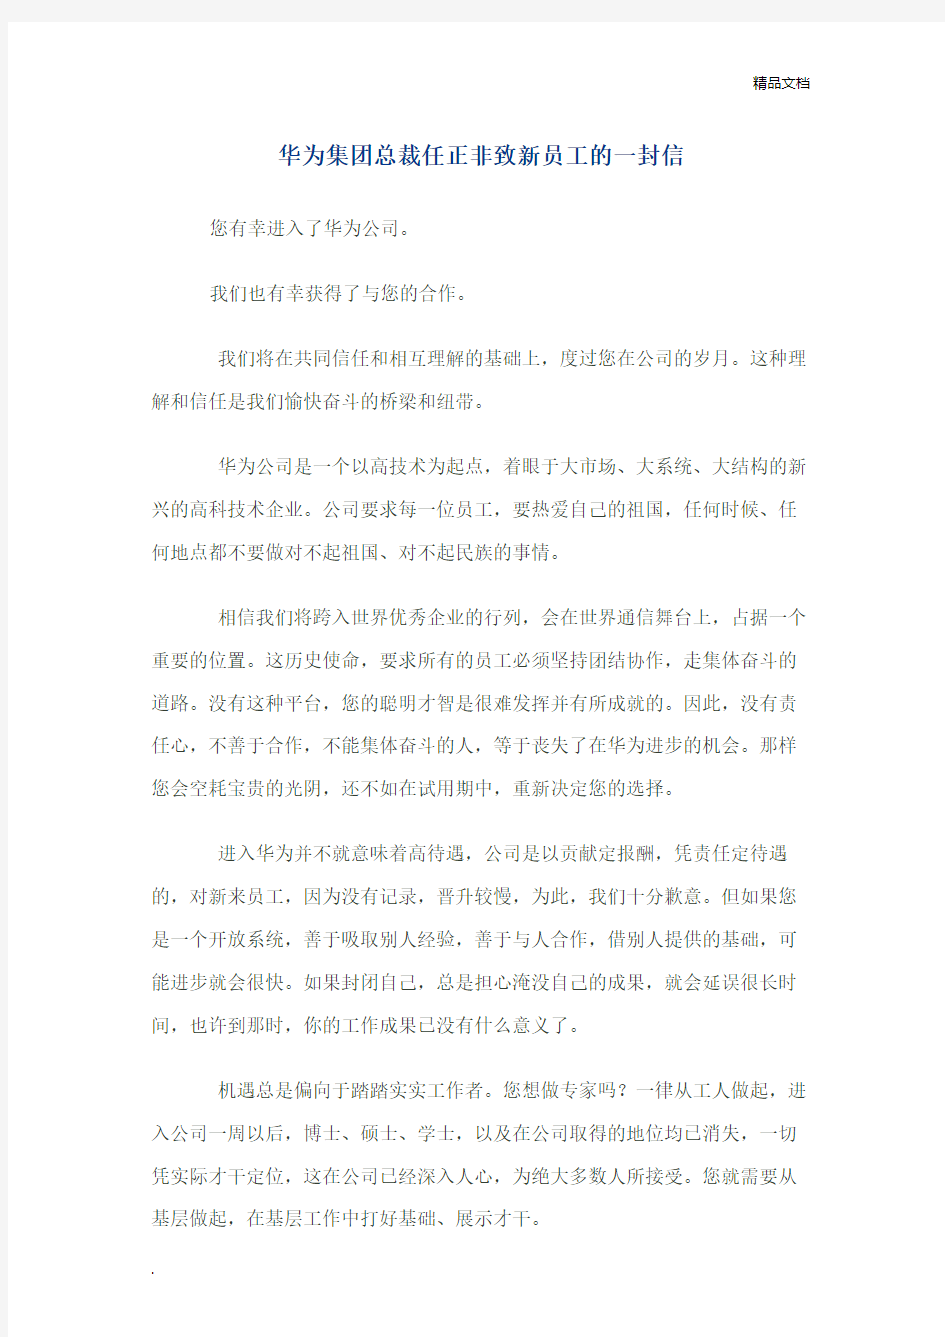 华为集团总裁任正非致新员工的一封信